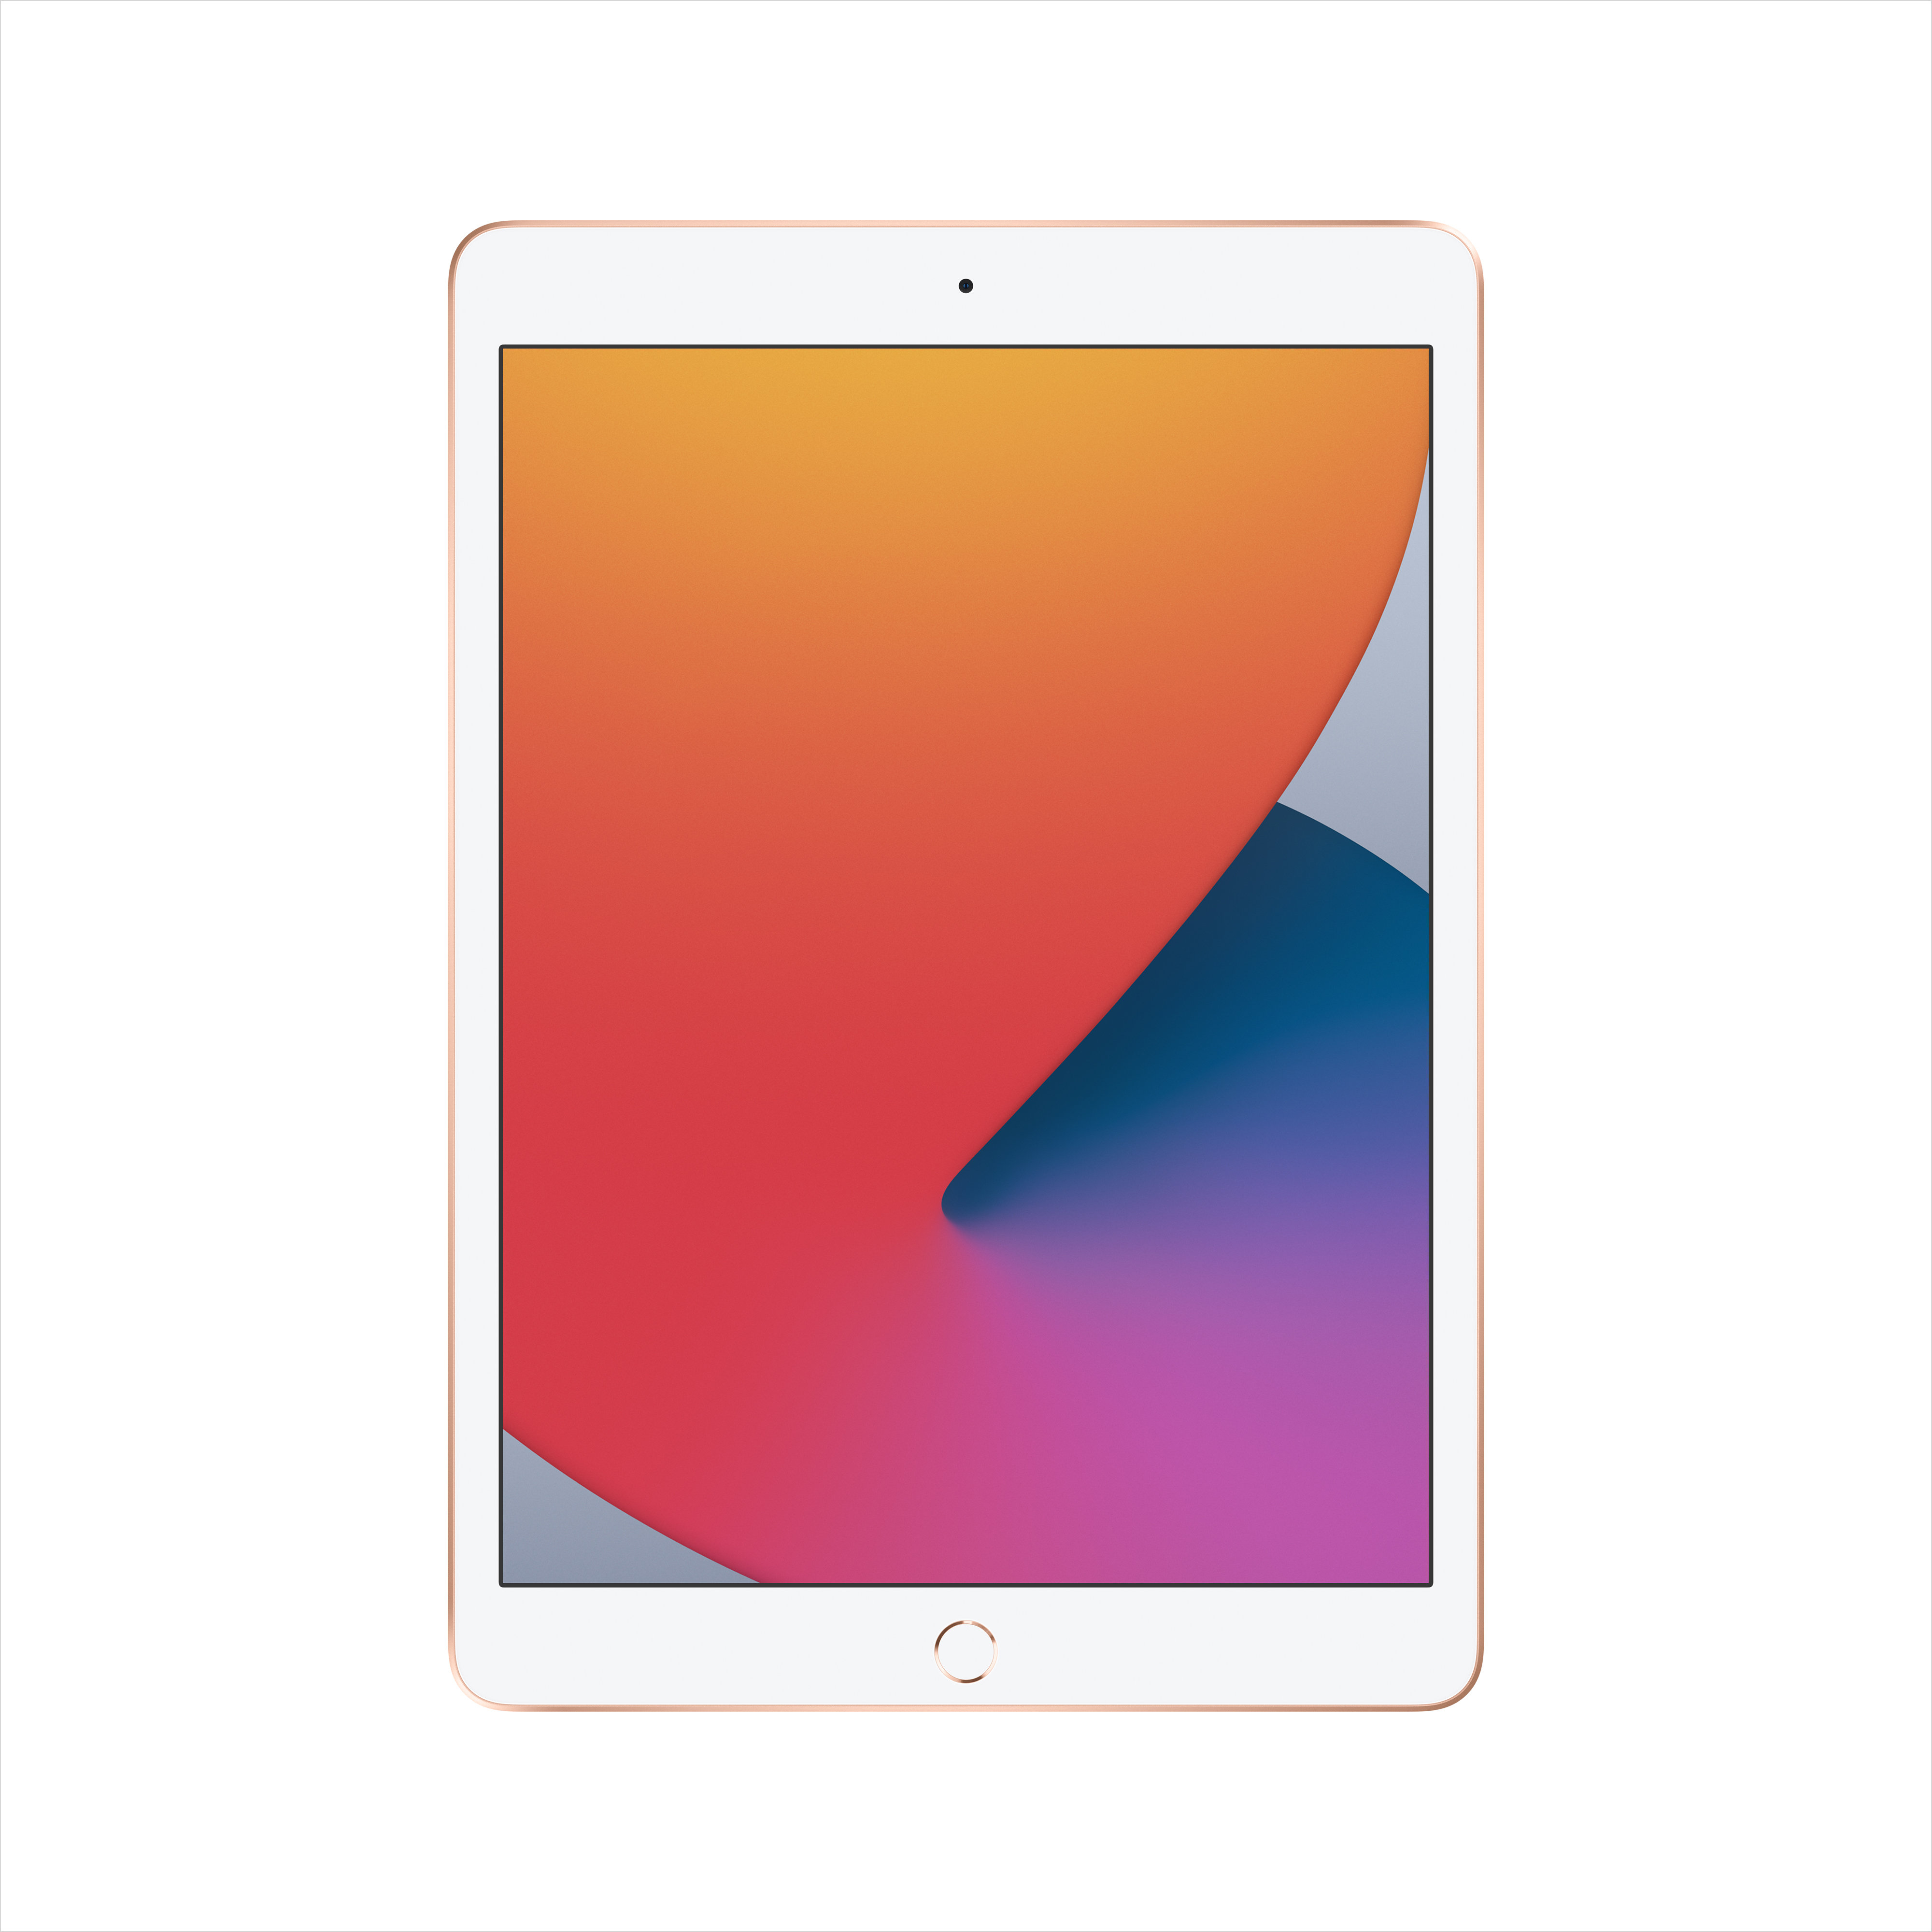 18300円 夏セール開催中 APPLE iPad IPAD WI-FI 128GB 2019 GR